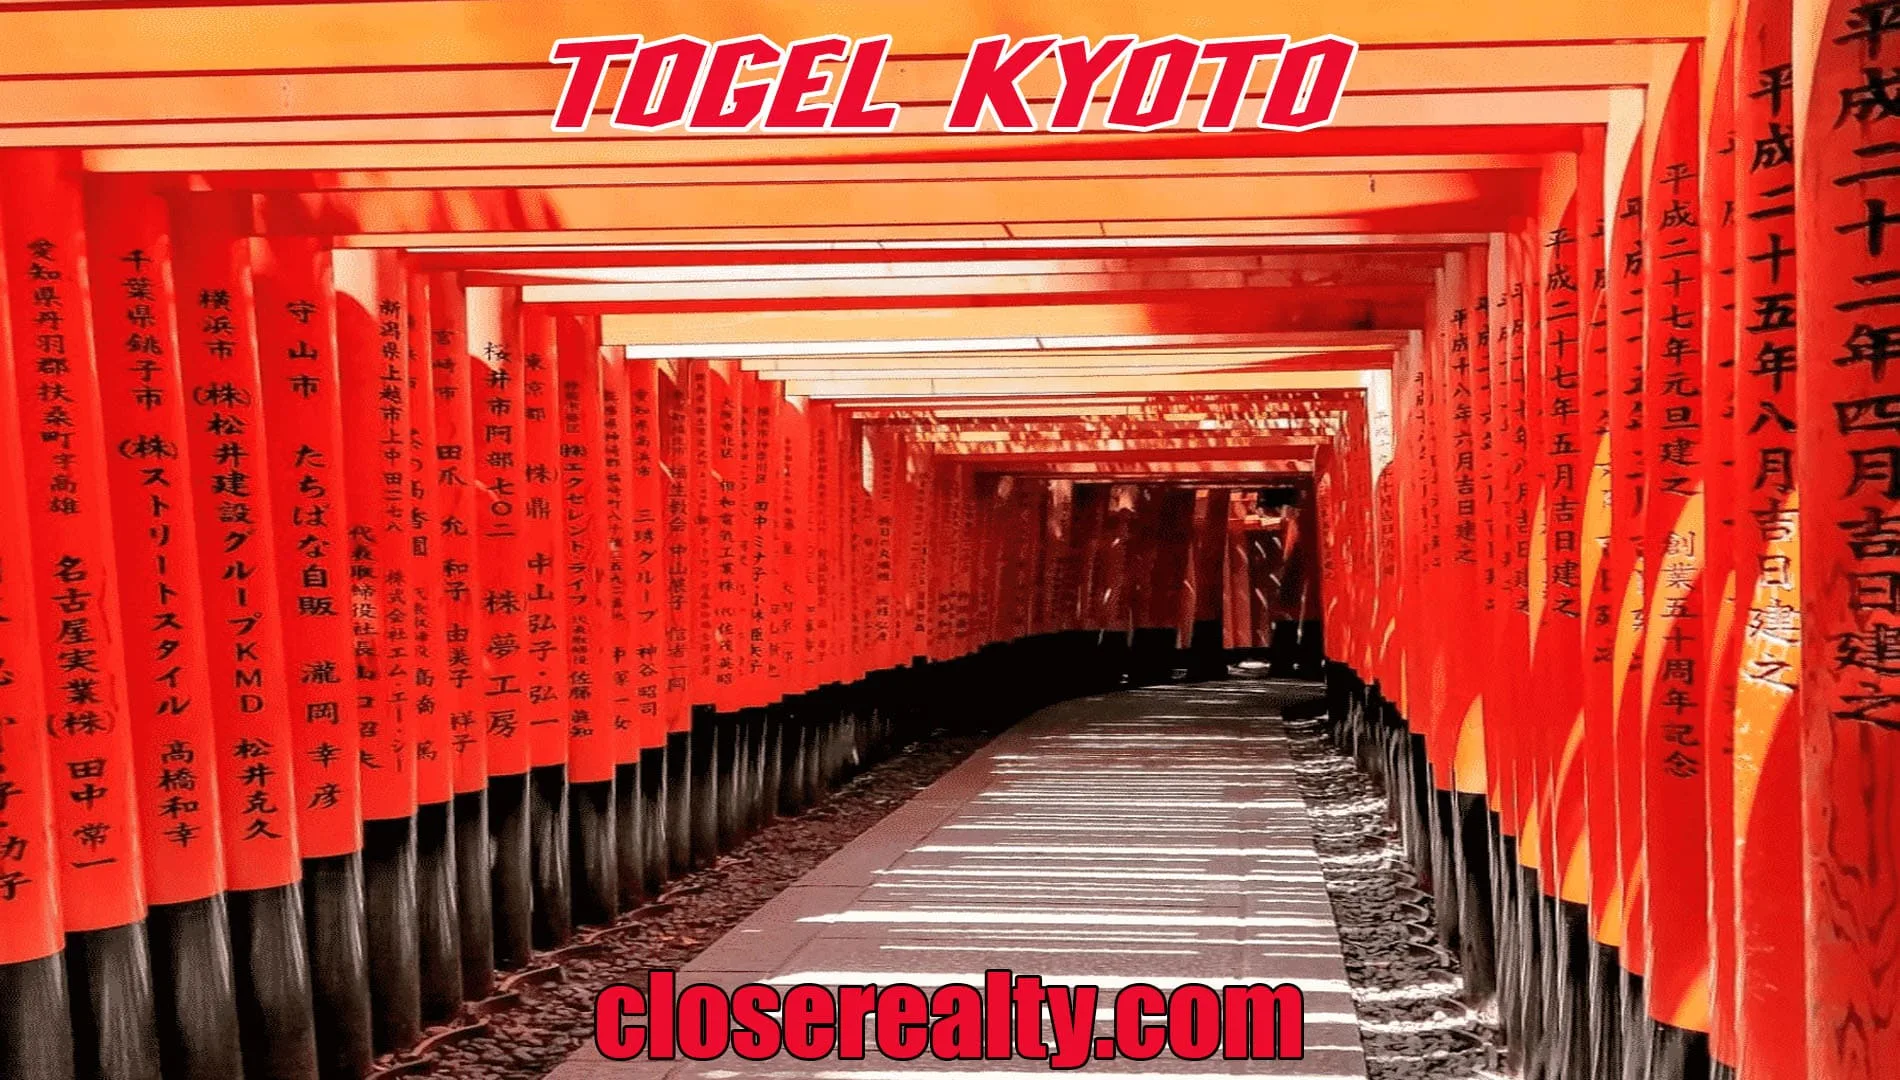 Togel Kyoto